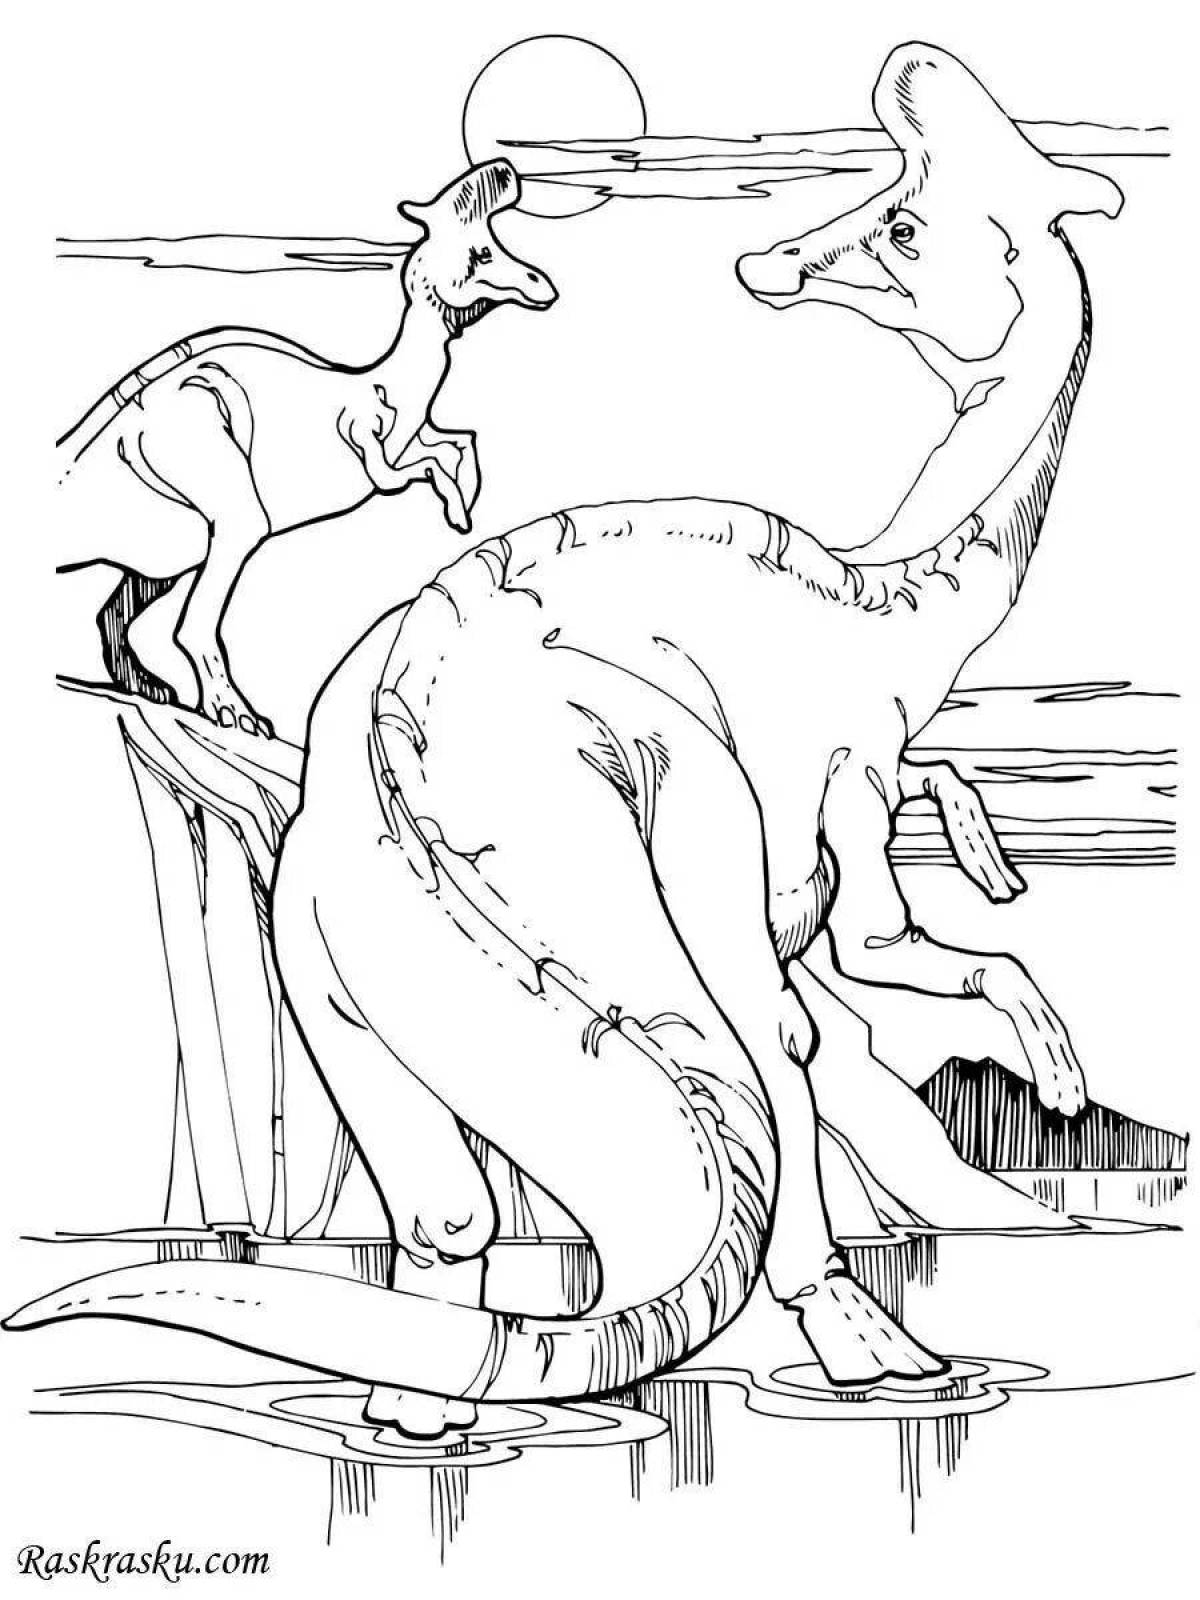 Щедрая раскраска динозавр паразауролоф